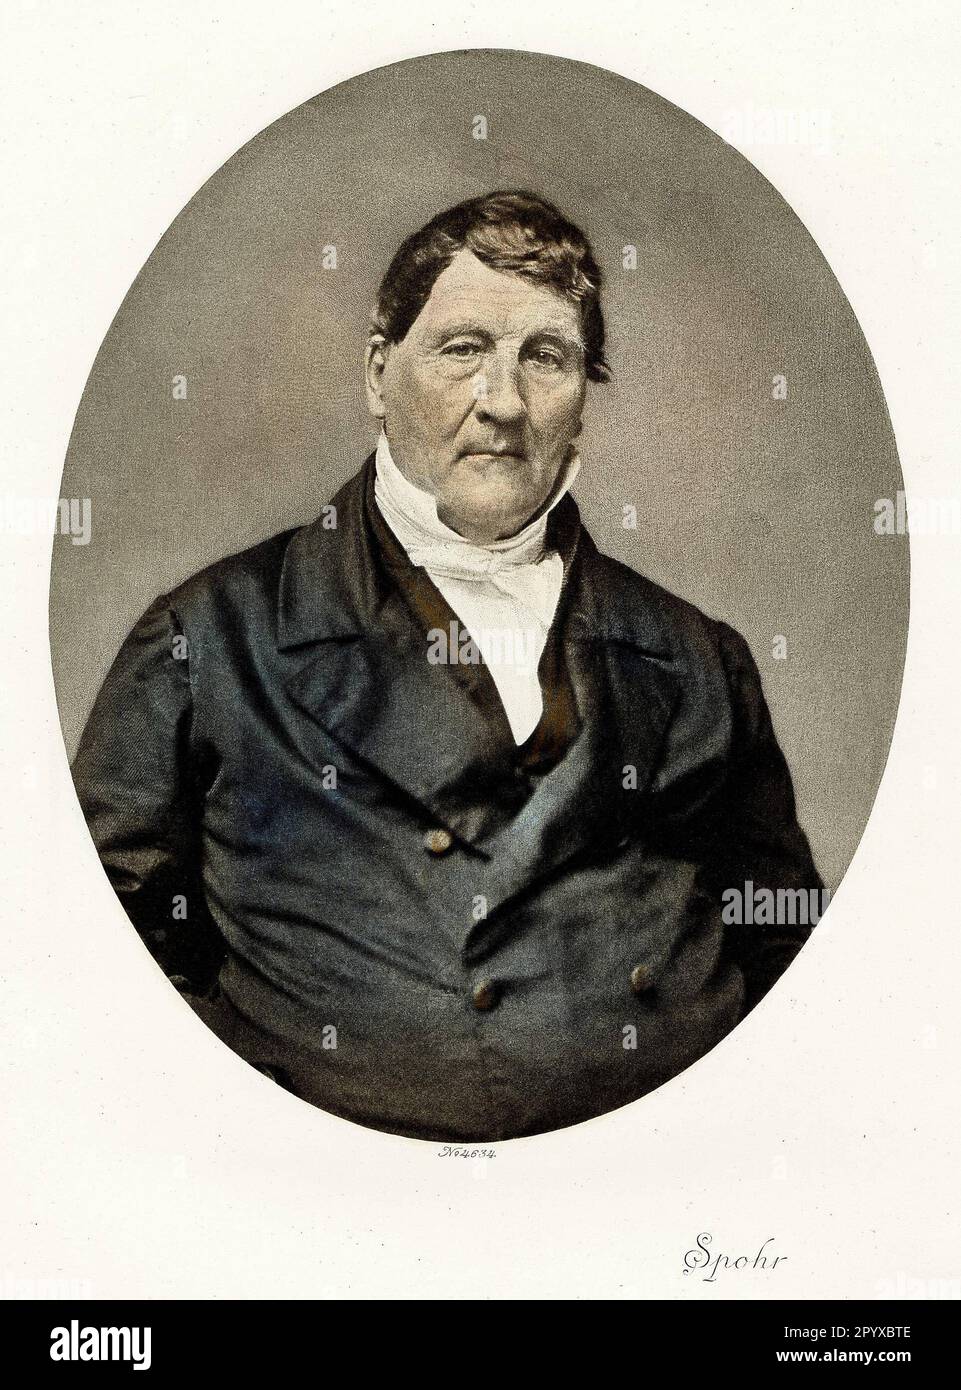 Louis Spohr (1784-1859), compositeur, violoniste et chef d'orchestre allemand. Photo: Heliogravure, Corpus Imaginum, Collection Hanfstaengl. [traduction automatique] Banque D'Images